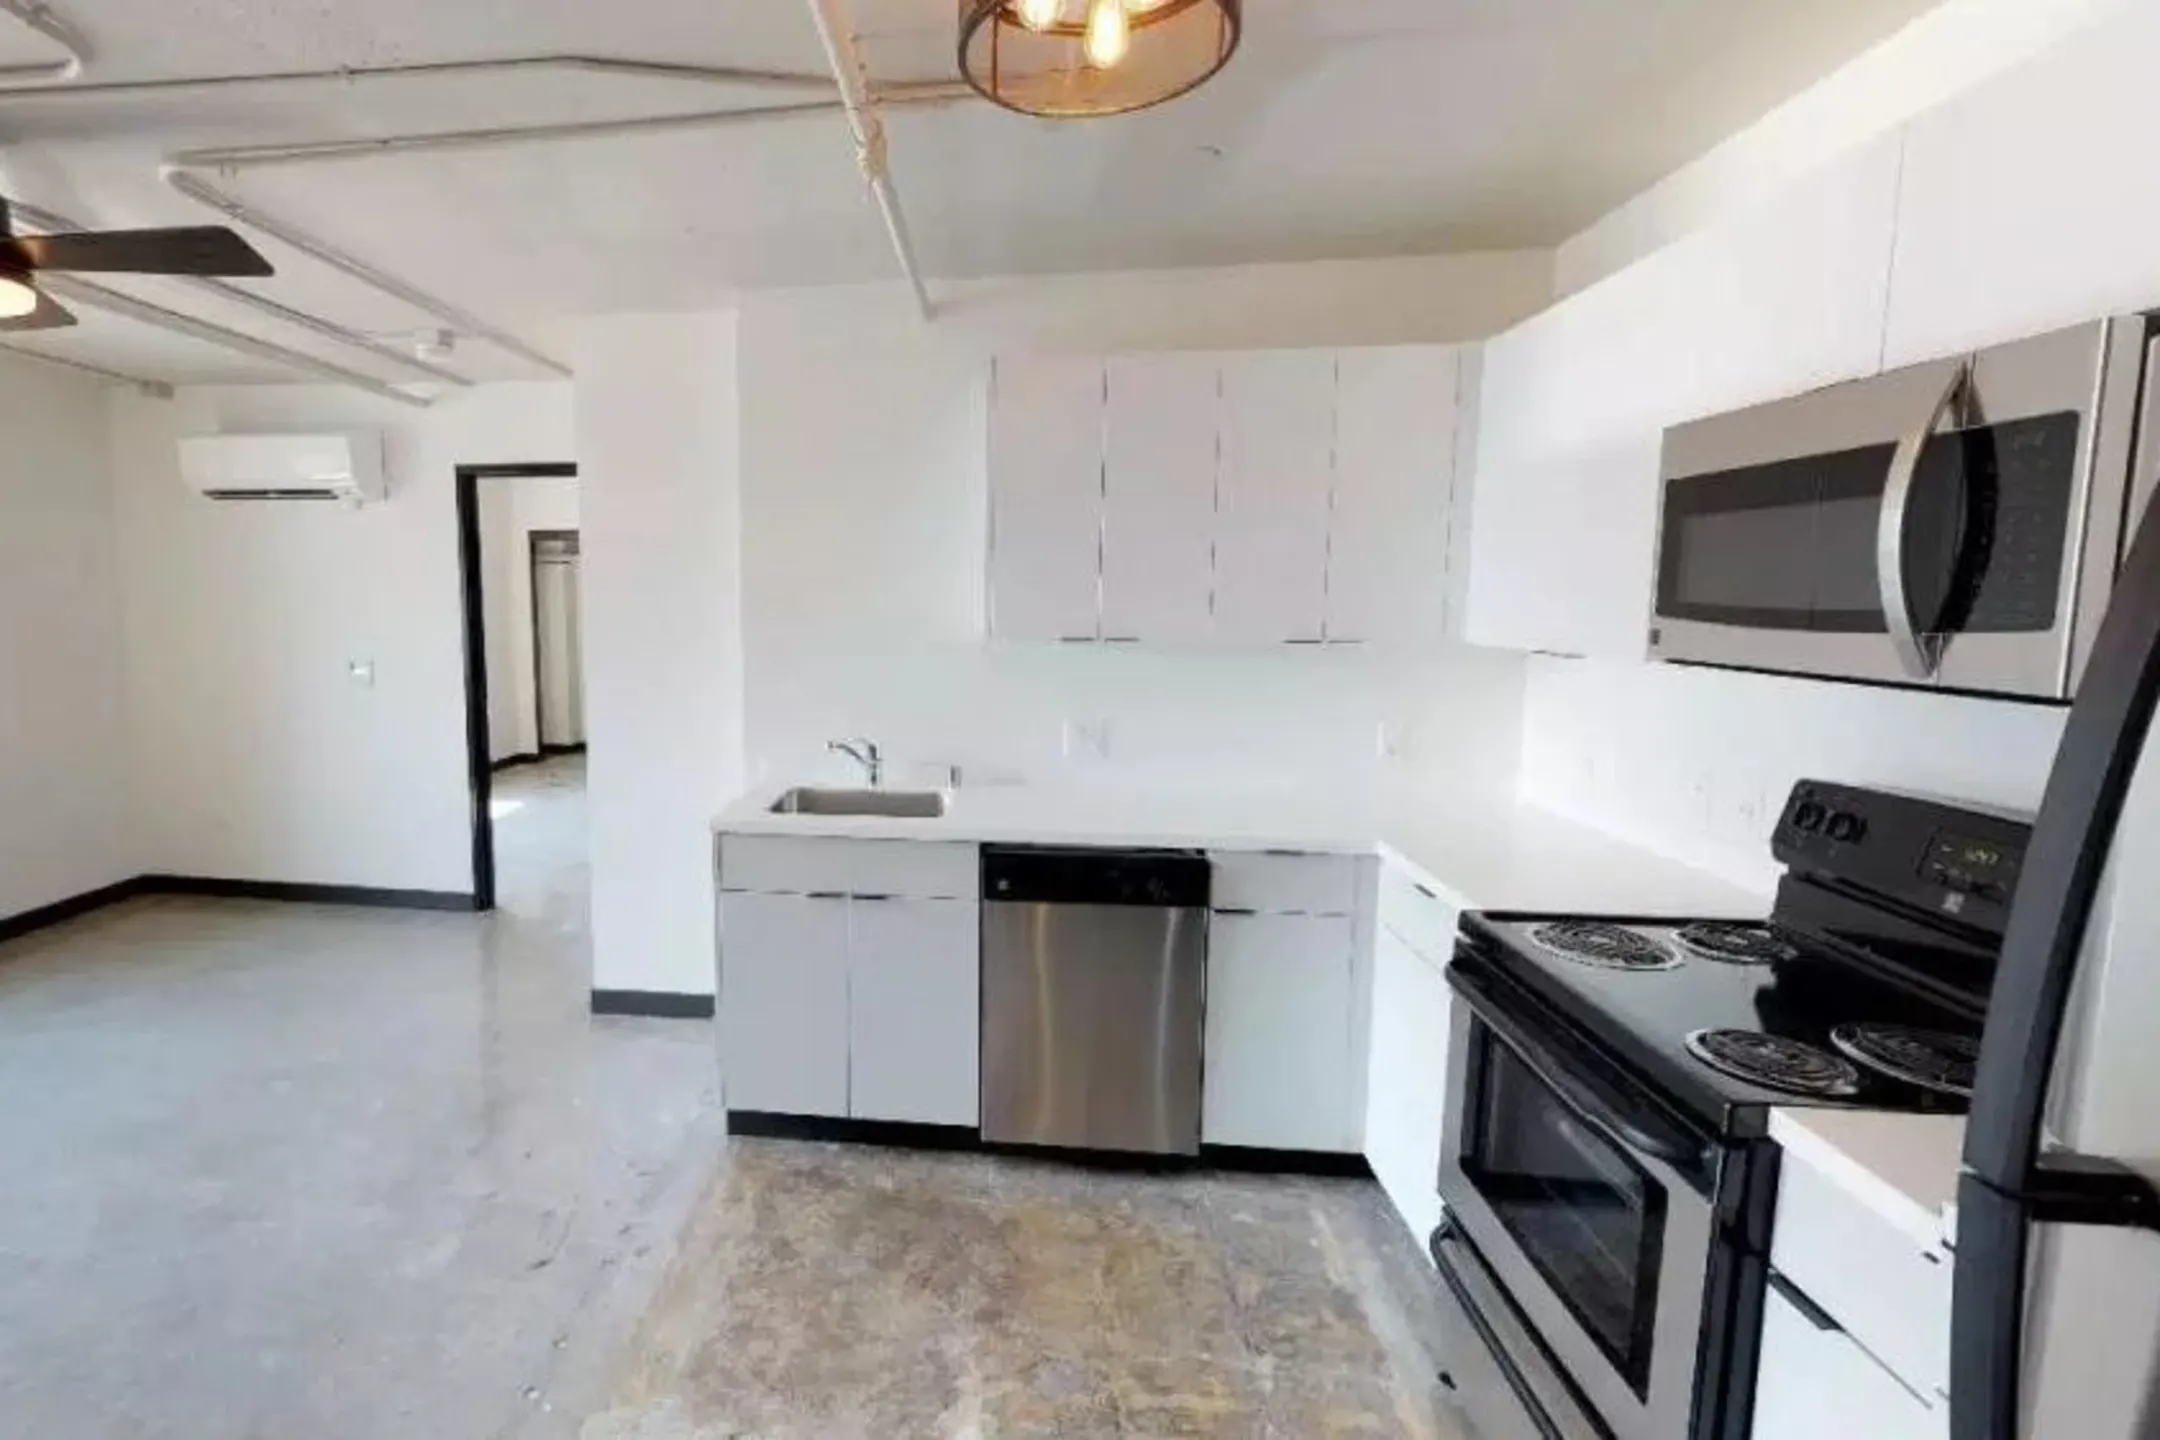 Kitchen - Loft 205 - Reno, NV